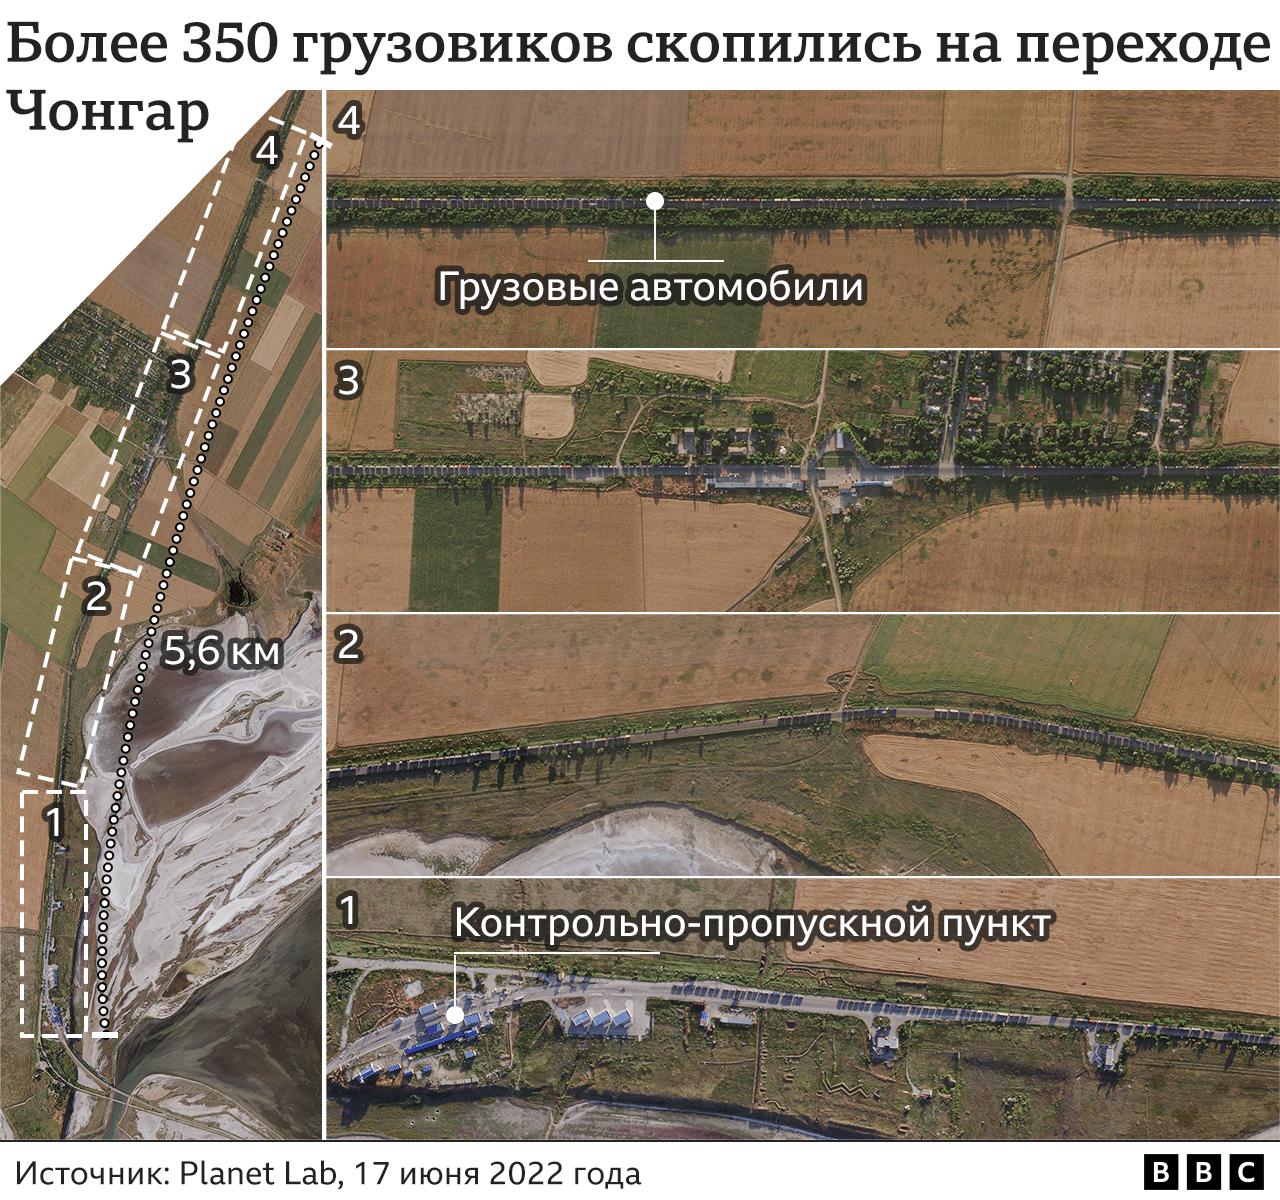 Спутниковый снимок погранперехода Чонгар, на котором видно более 350 грузовиков, въезжающих в Крым